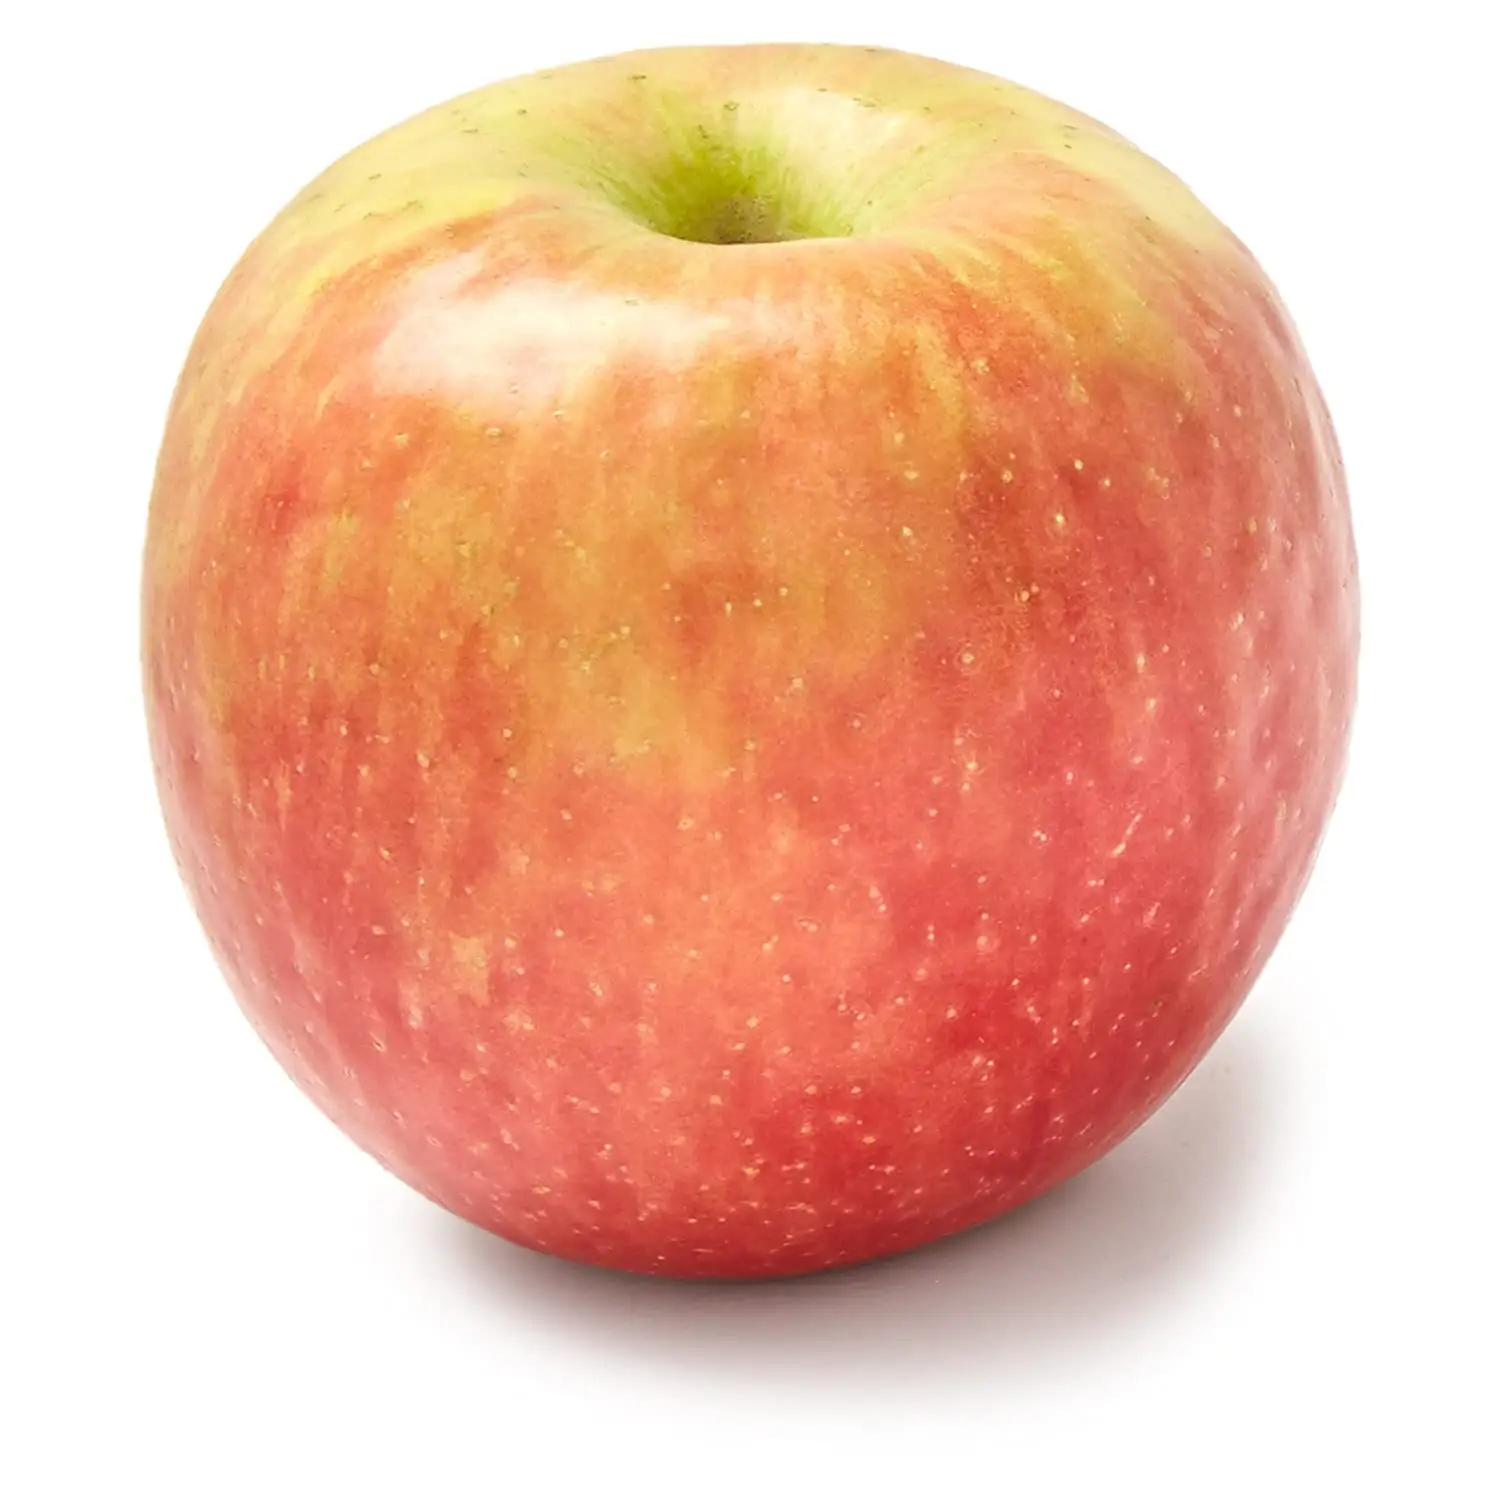 Yüksek kaliteli lezzetli taze meyveler yunan kökenli muhallebi elma meyve